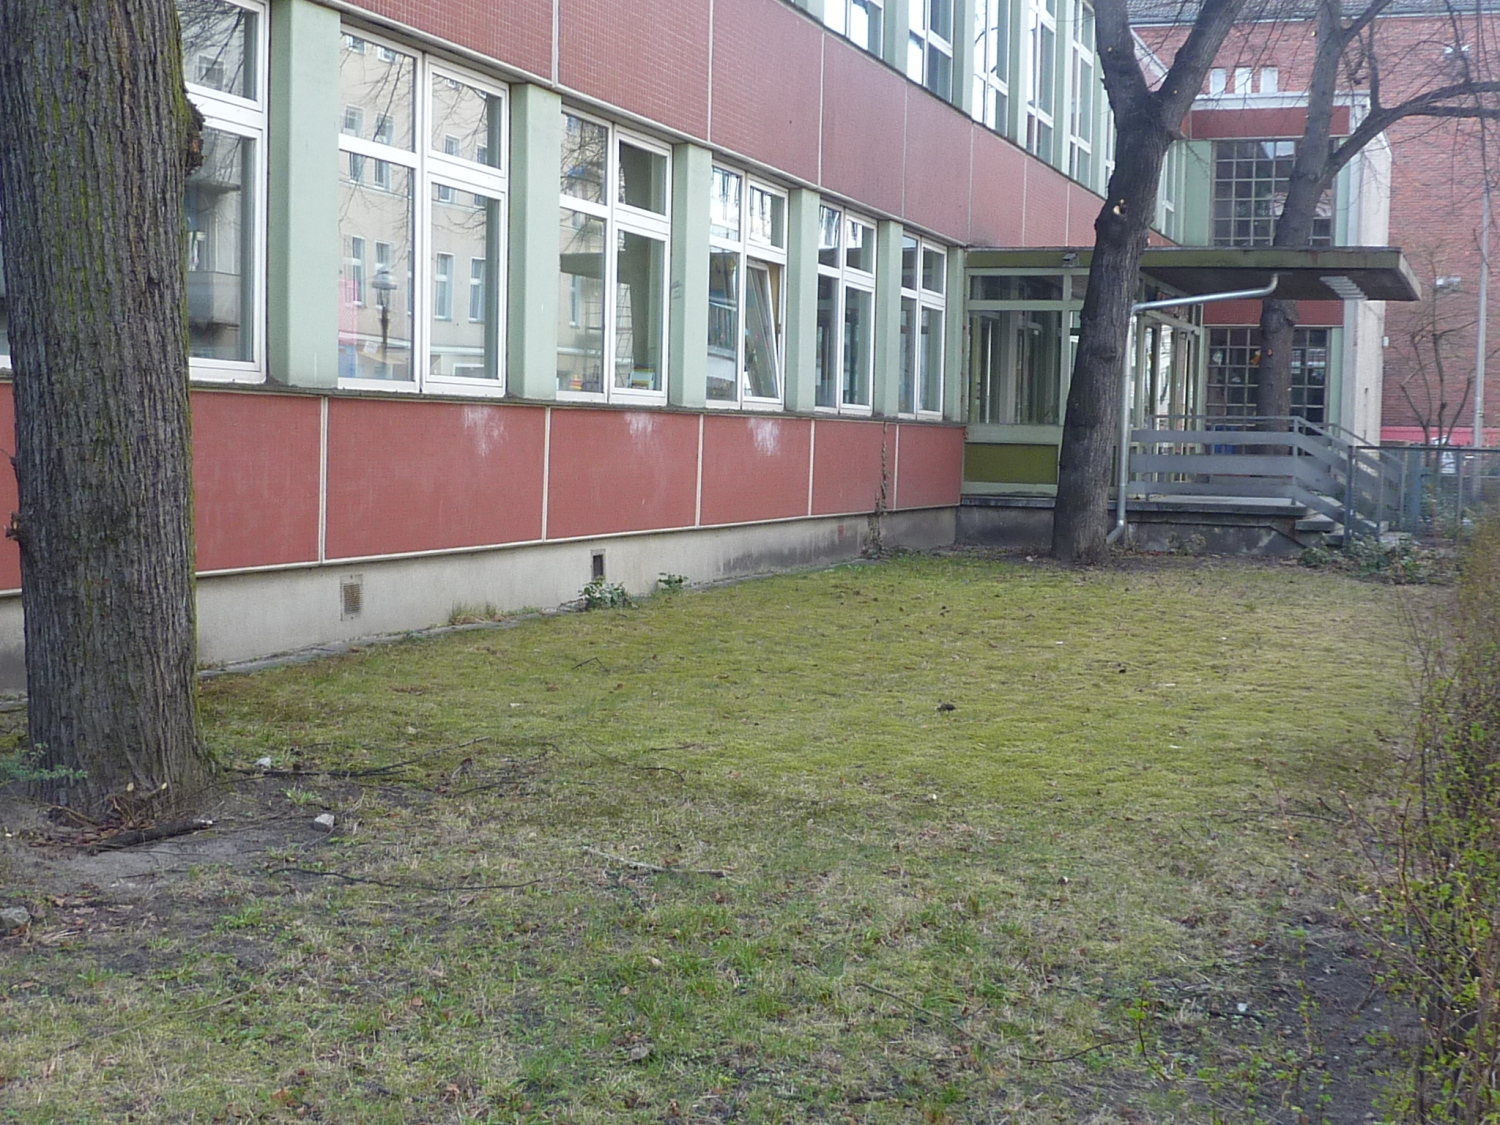 Lynar-Grundschule vor der Sanierung